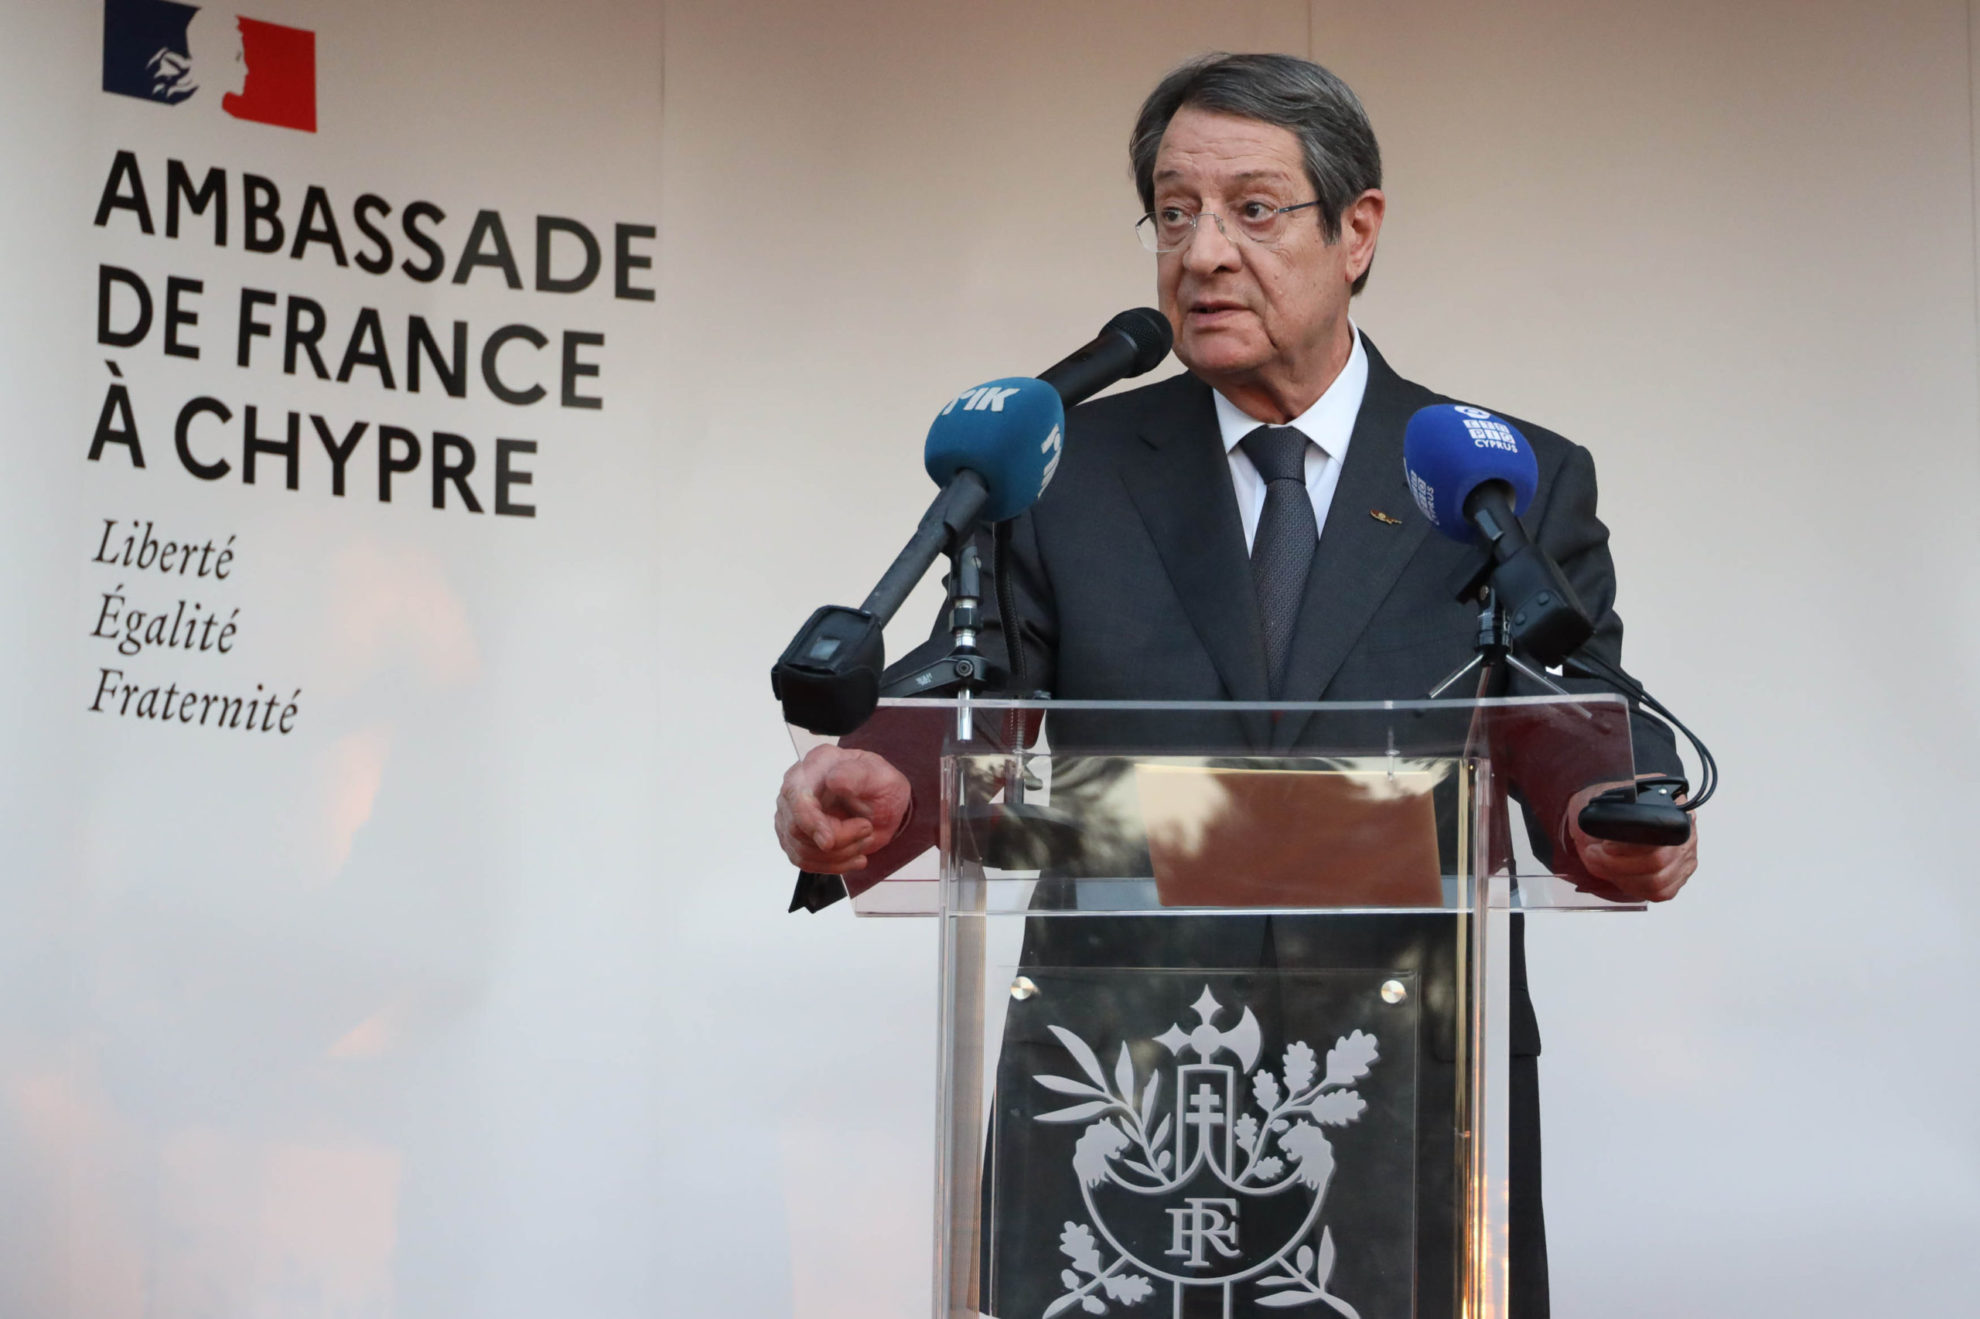 Αναστασιάδης: Η στήριξη της Γαλλίας για την επανένωση της χώρας και όχι τη διατήρηση του στάτους κβο είναι πάντοτε σημαντική